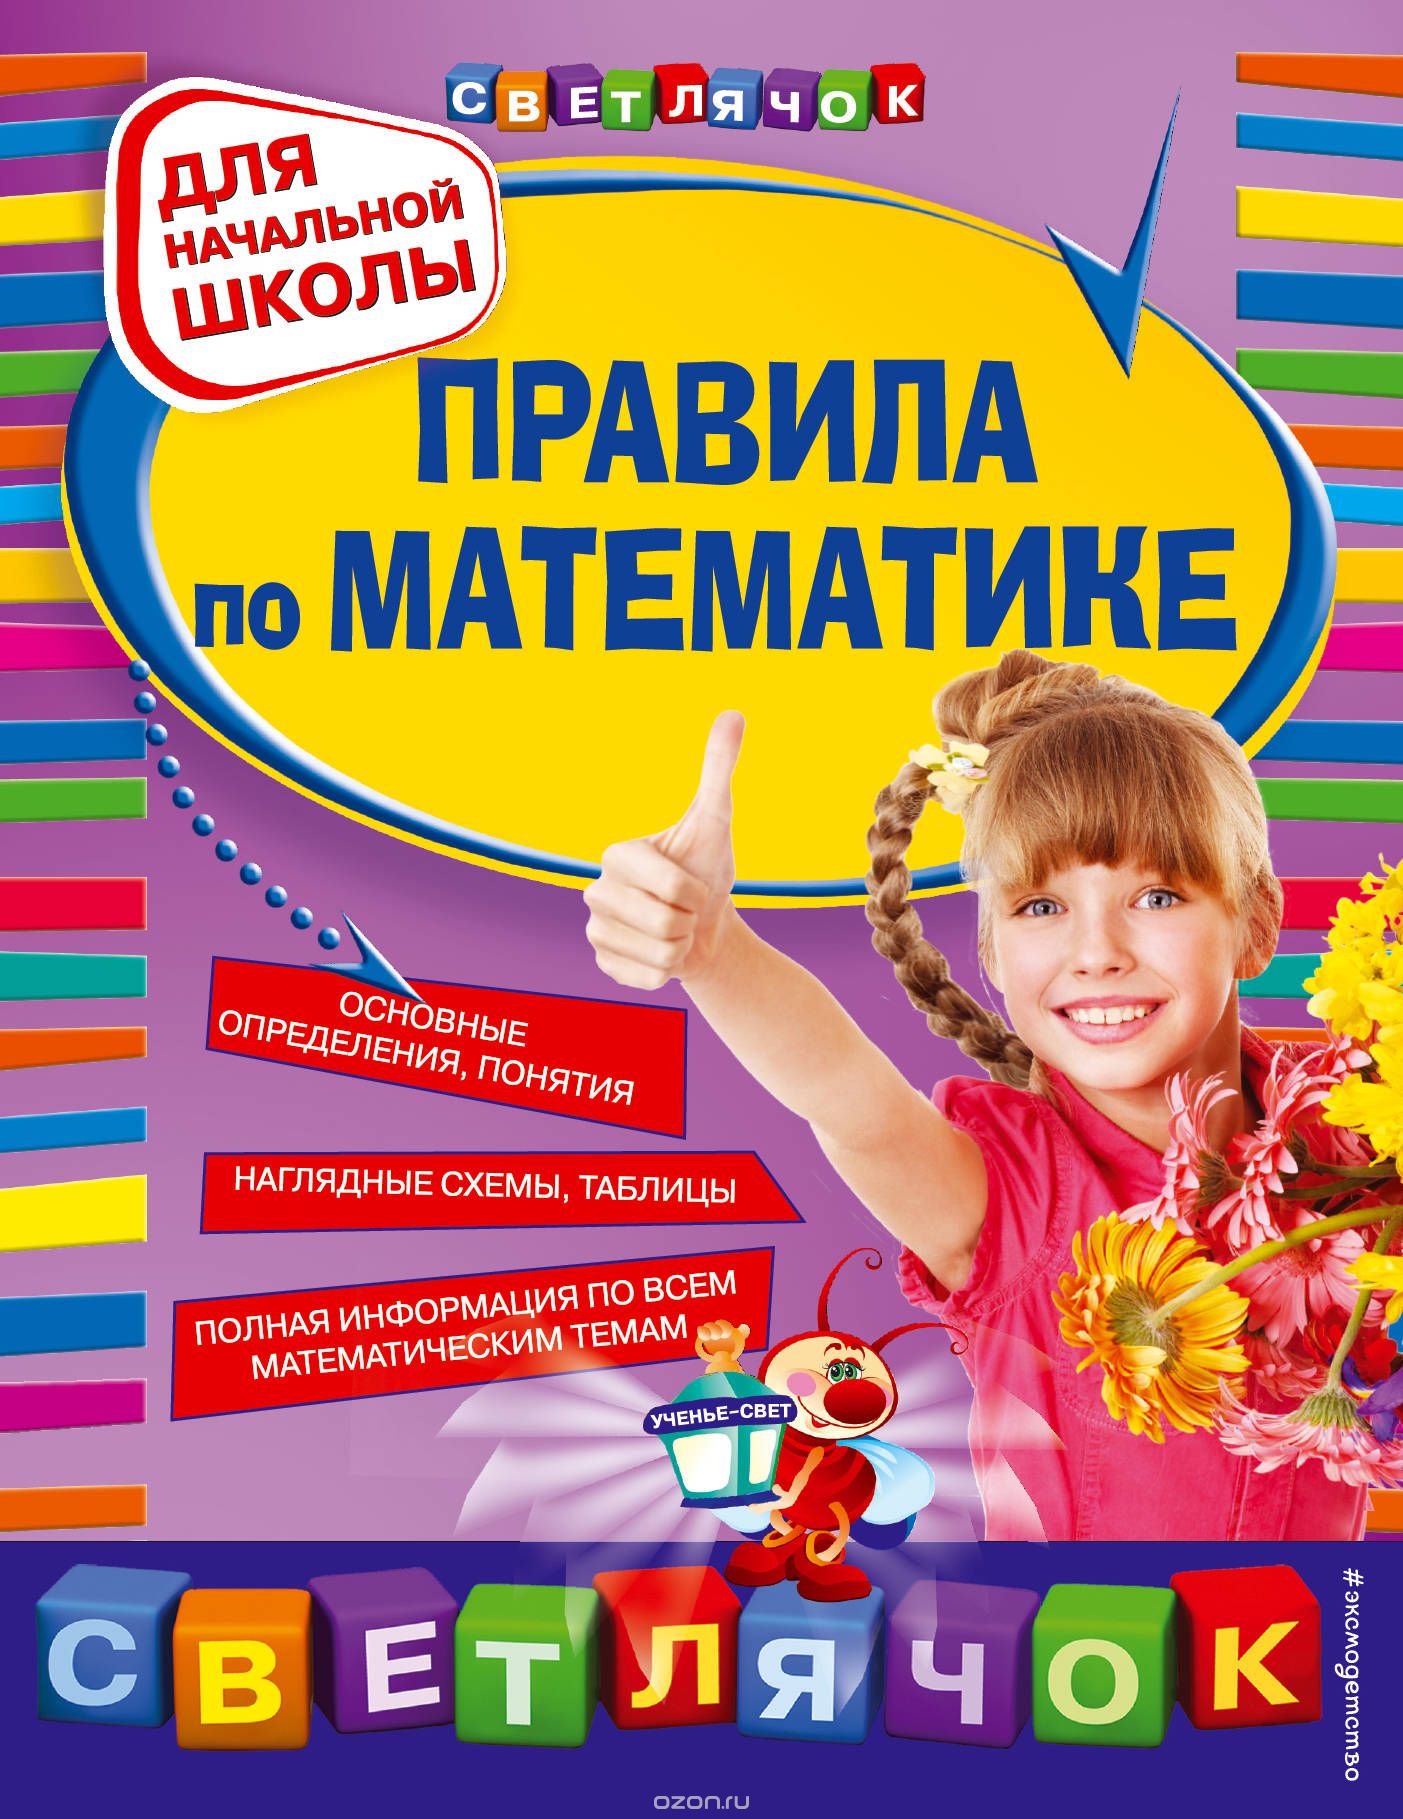 Скачать книгу "Правила по математике. Для начальной школы, Марченко И.С."